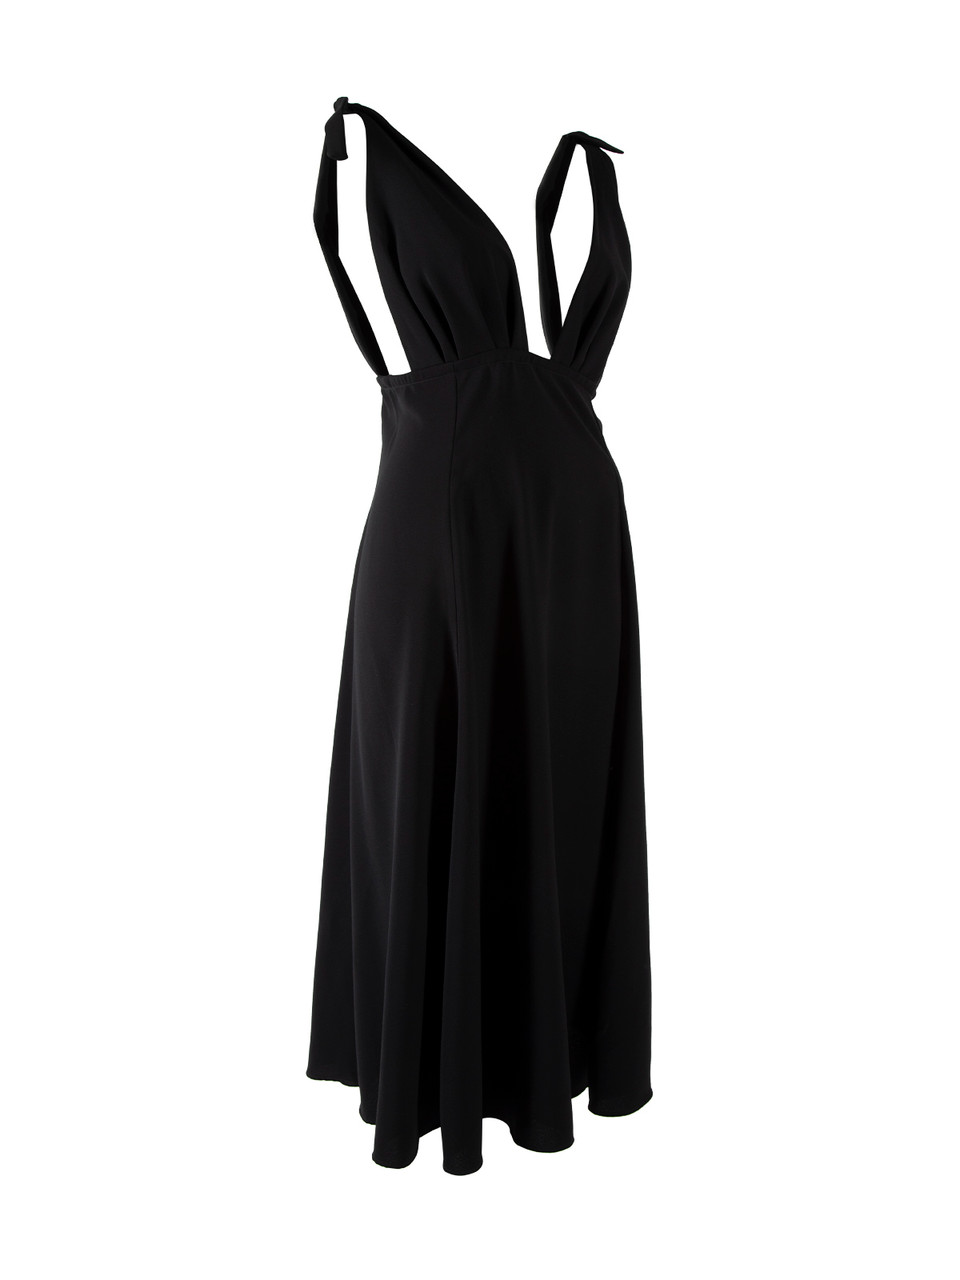 Alexa Chung Midi Sleeveless Black Dress